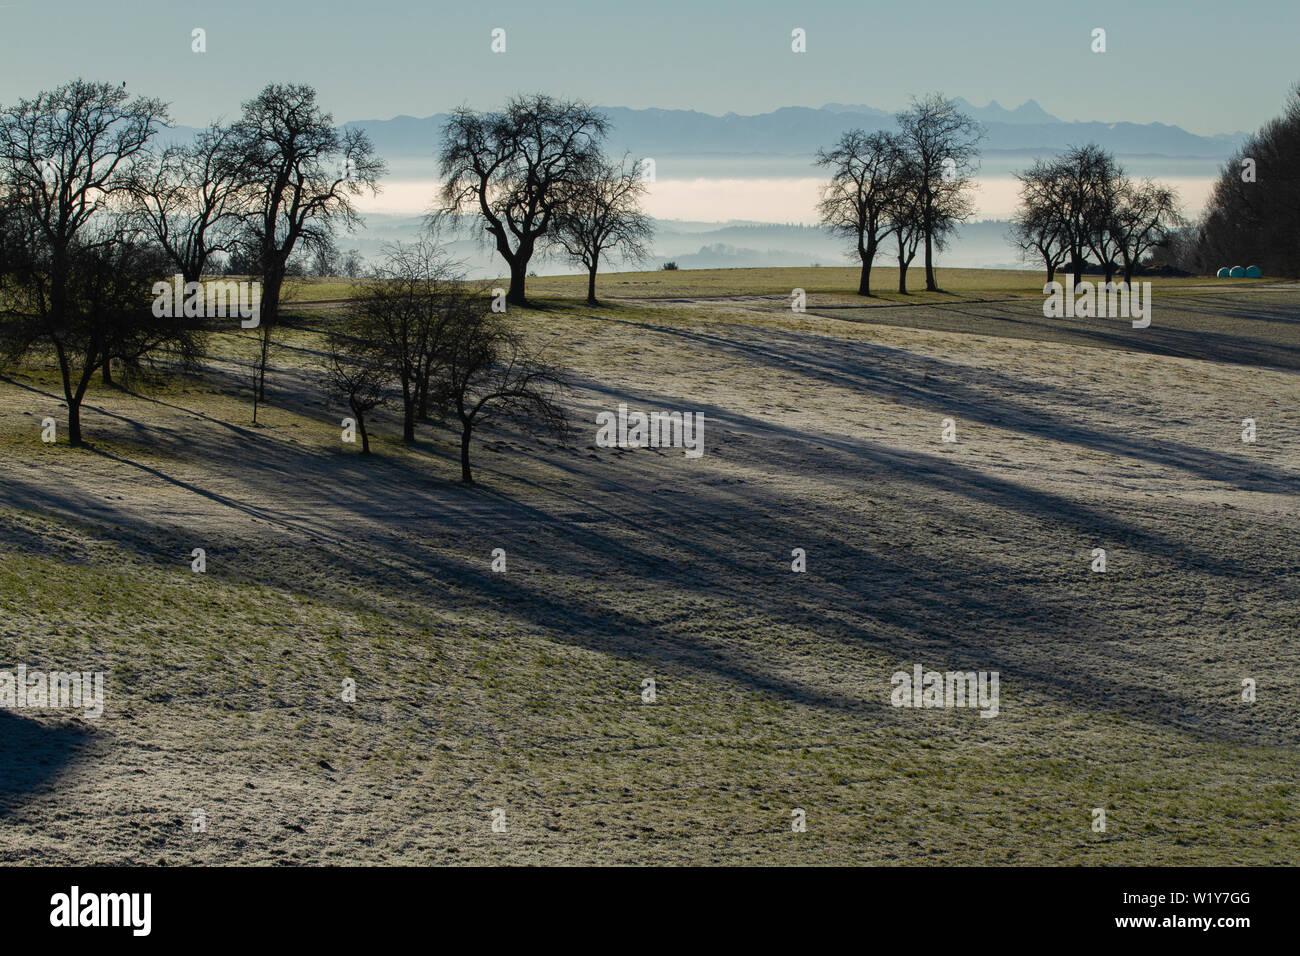 Alberi sfrondato casting lunga ombra su un pupazzo di neve, abbondanti campo dopo il raccolto in una luce nebbiosi e una catena montuosa in background Foto Stock